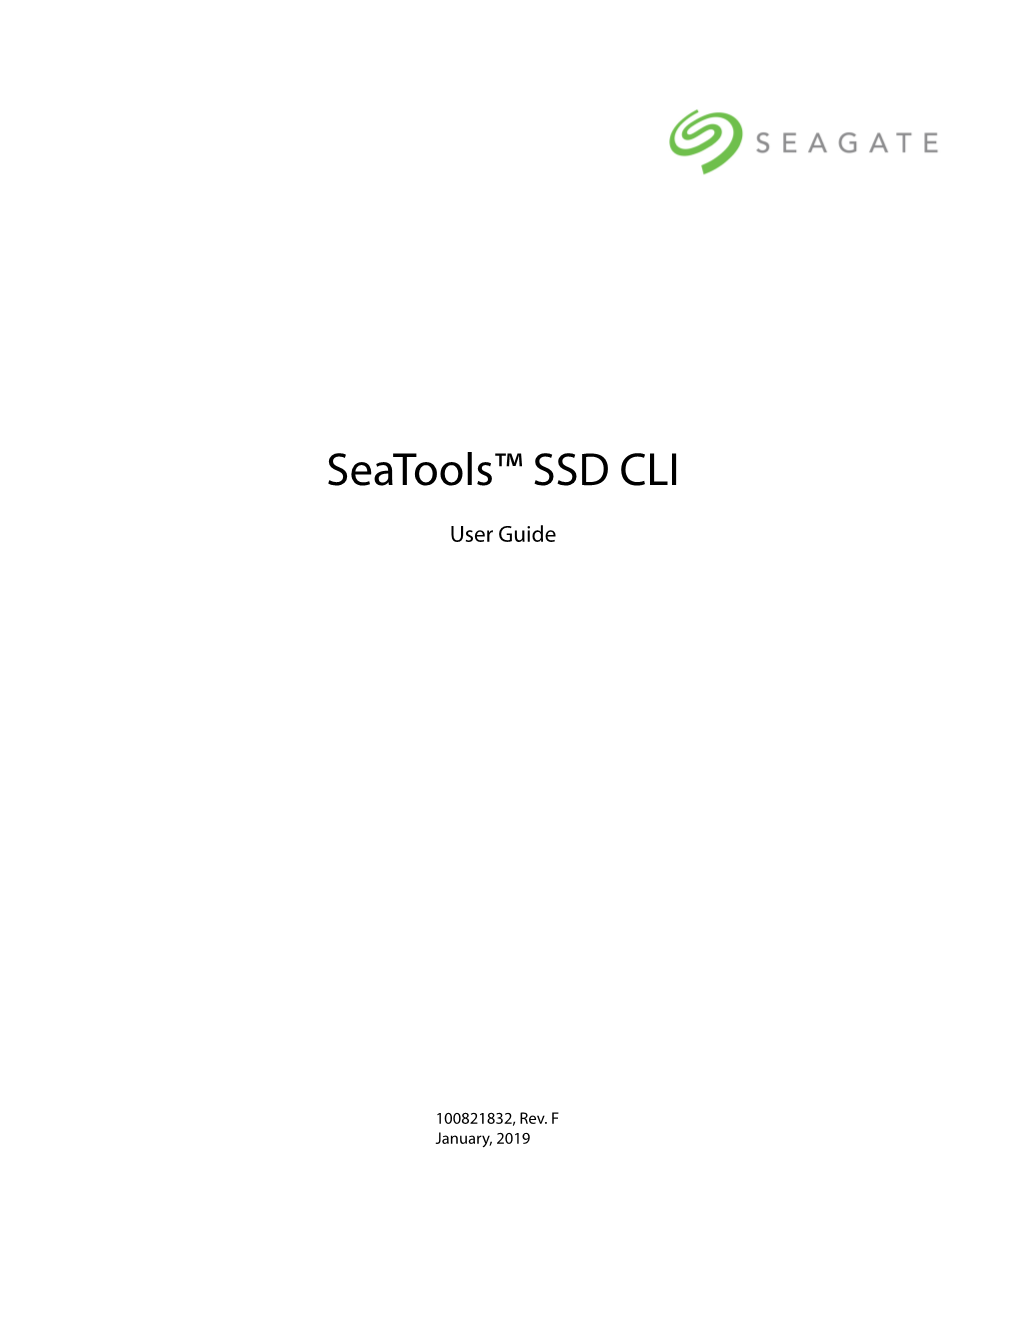 Seatools SSD CLI Guide